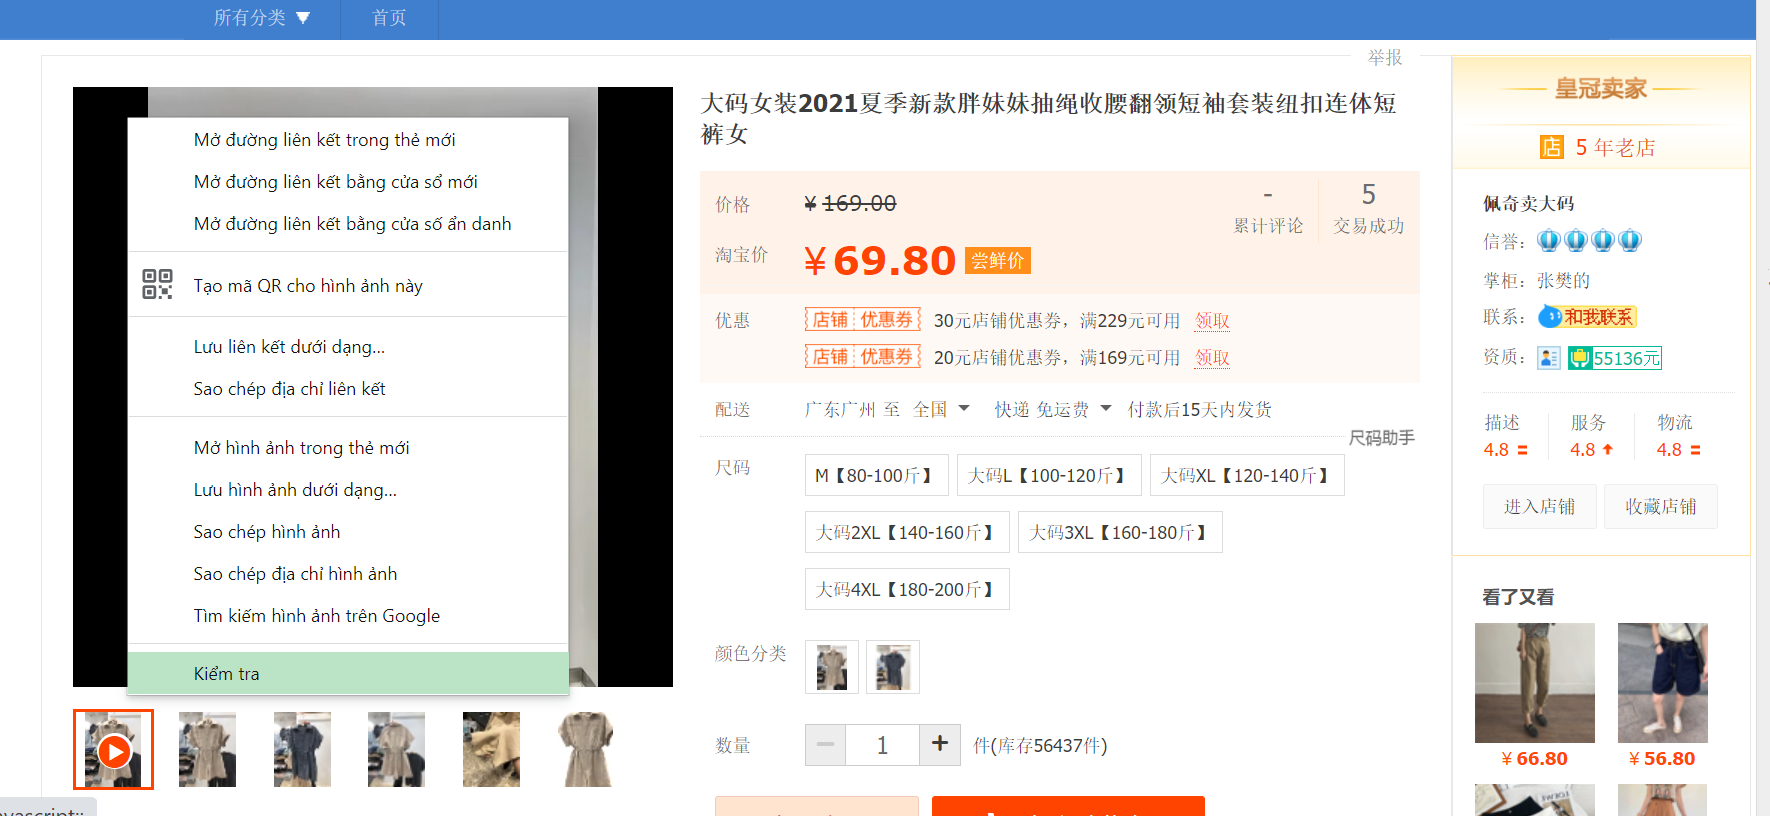 Hướng dẫn tải video Taobao bằng mẹo